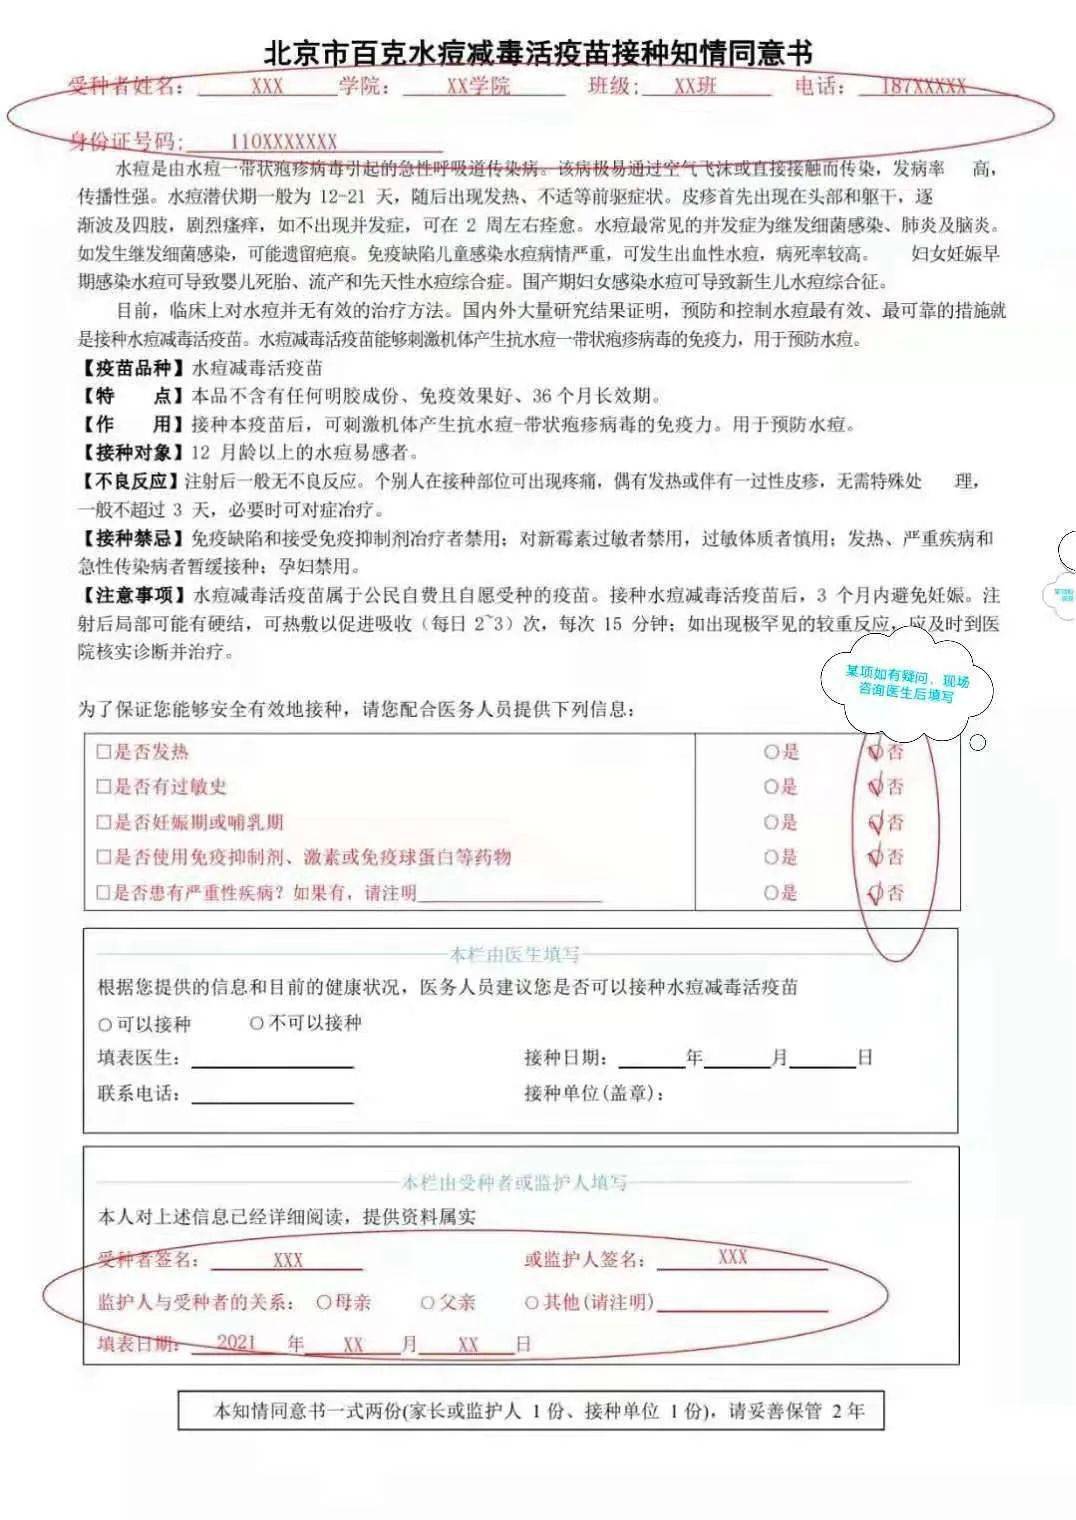 北京林业大学2021级新生体检指南